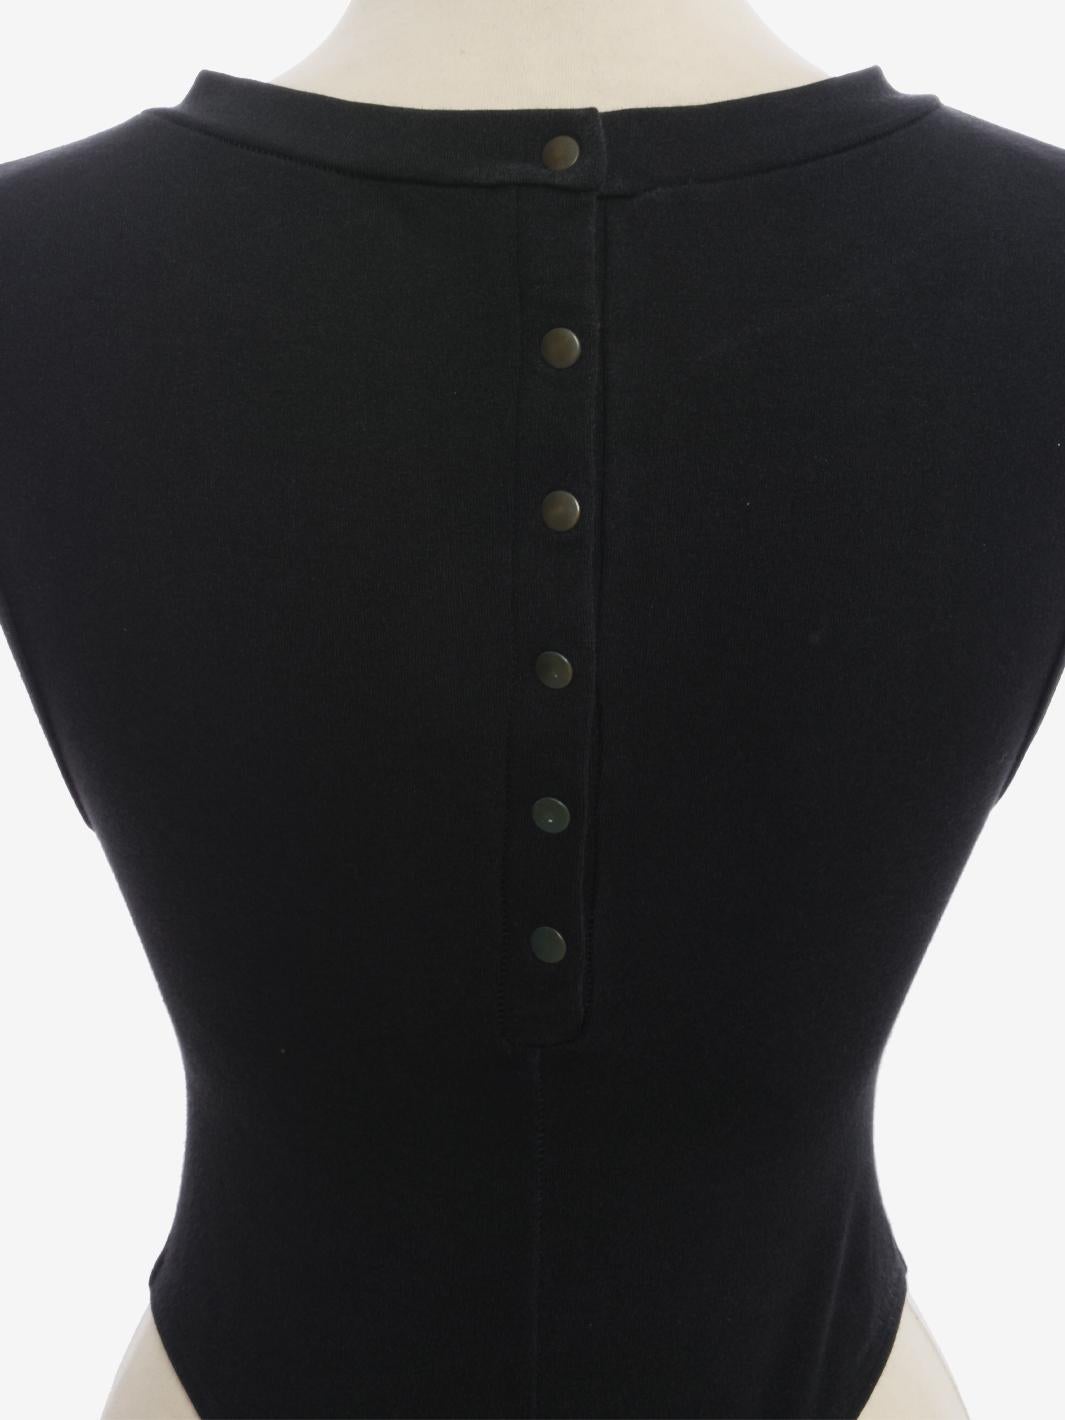 Der Alaïa Buttoned Bodysuit ist ein Kleidungsstück von Azzedine Alaïa aus der zweiten Hälfte des Jahres 1980. Mit Knopfverschluss auf der Rückseite und rundem Ausschnitt. Die Beine sind typisch für die damalige Zeit hoch geschnitten.

ZUSTAND
Sehr